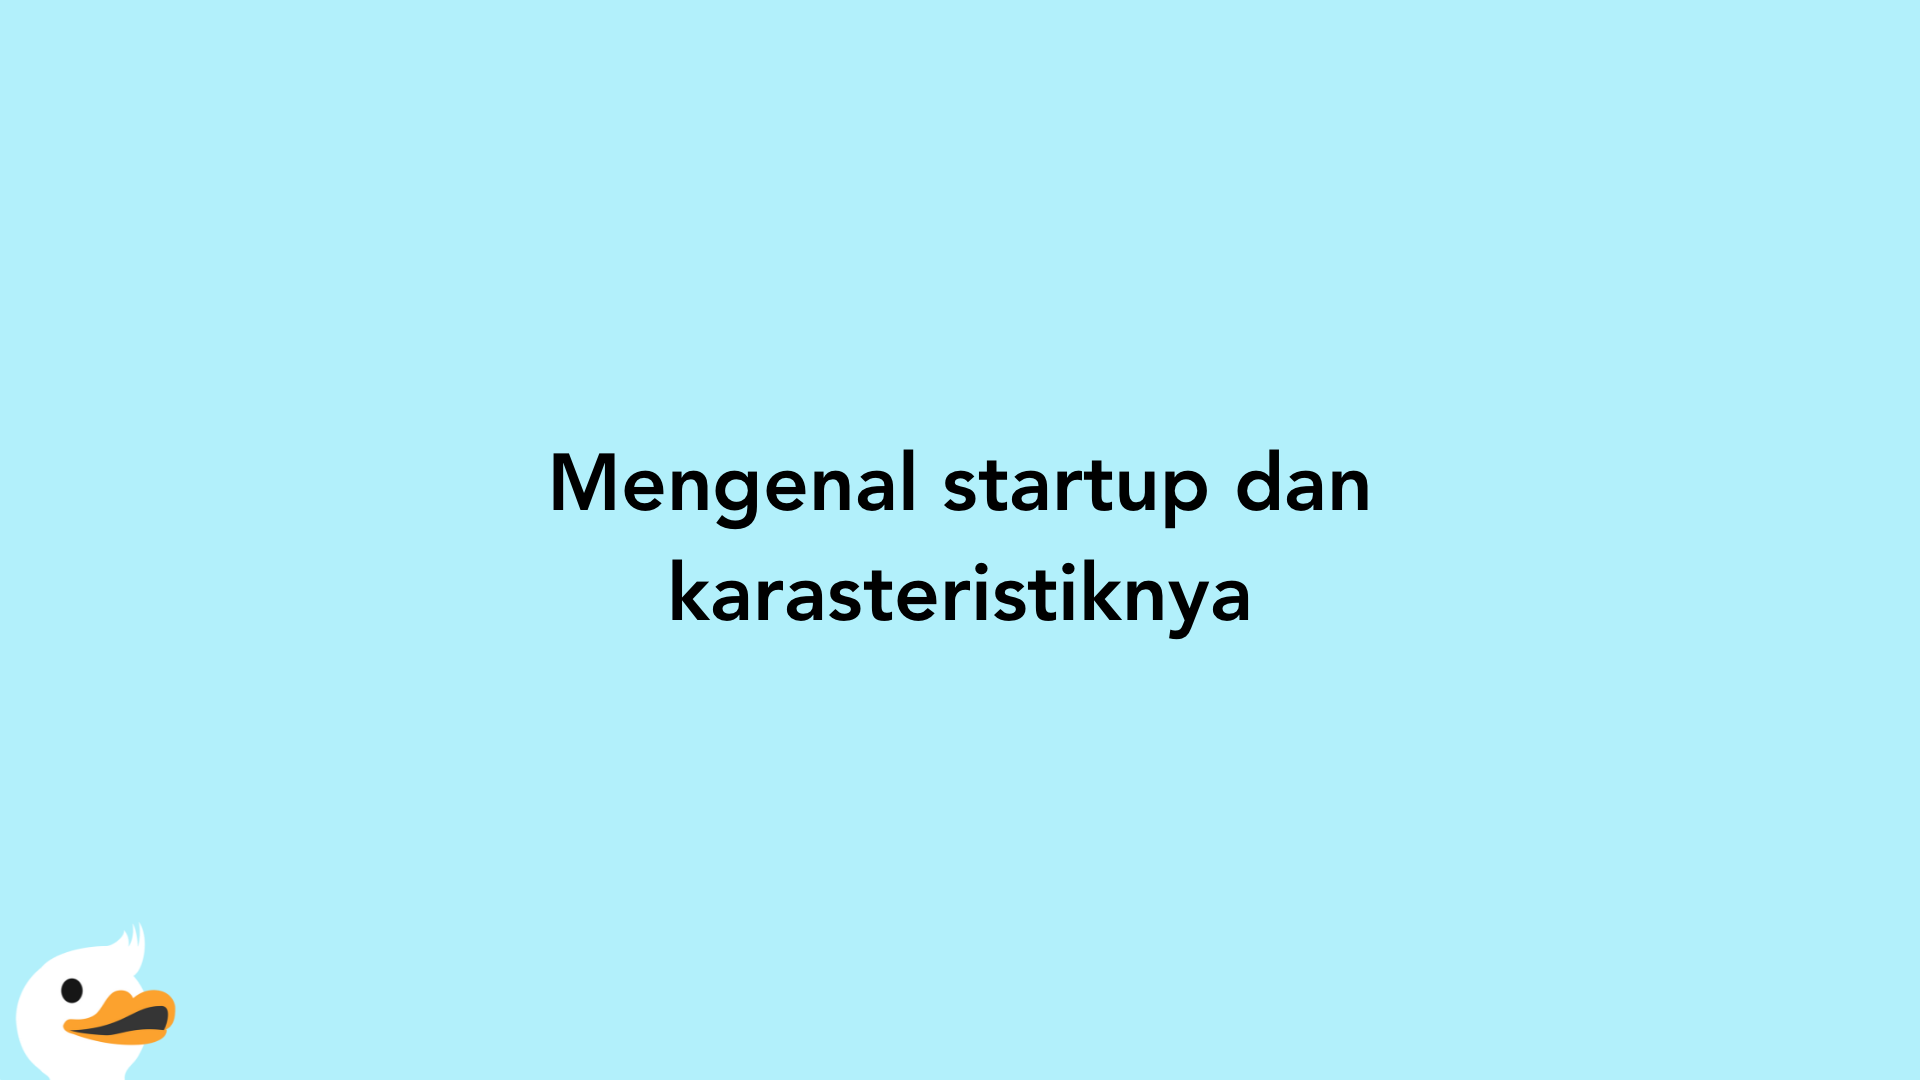 Mengenal startup dan karasteristiknya